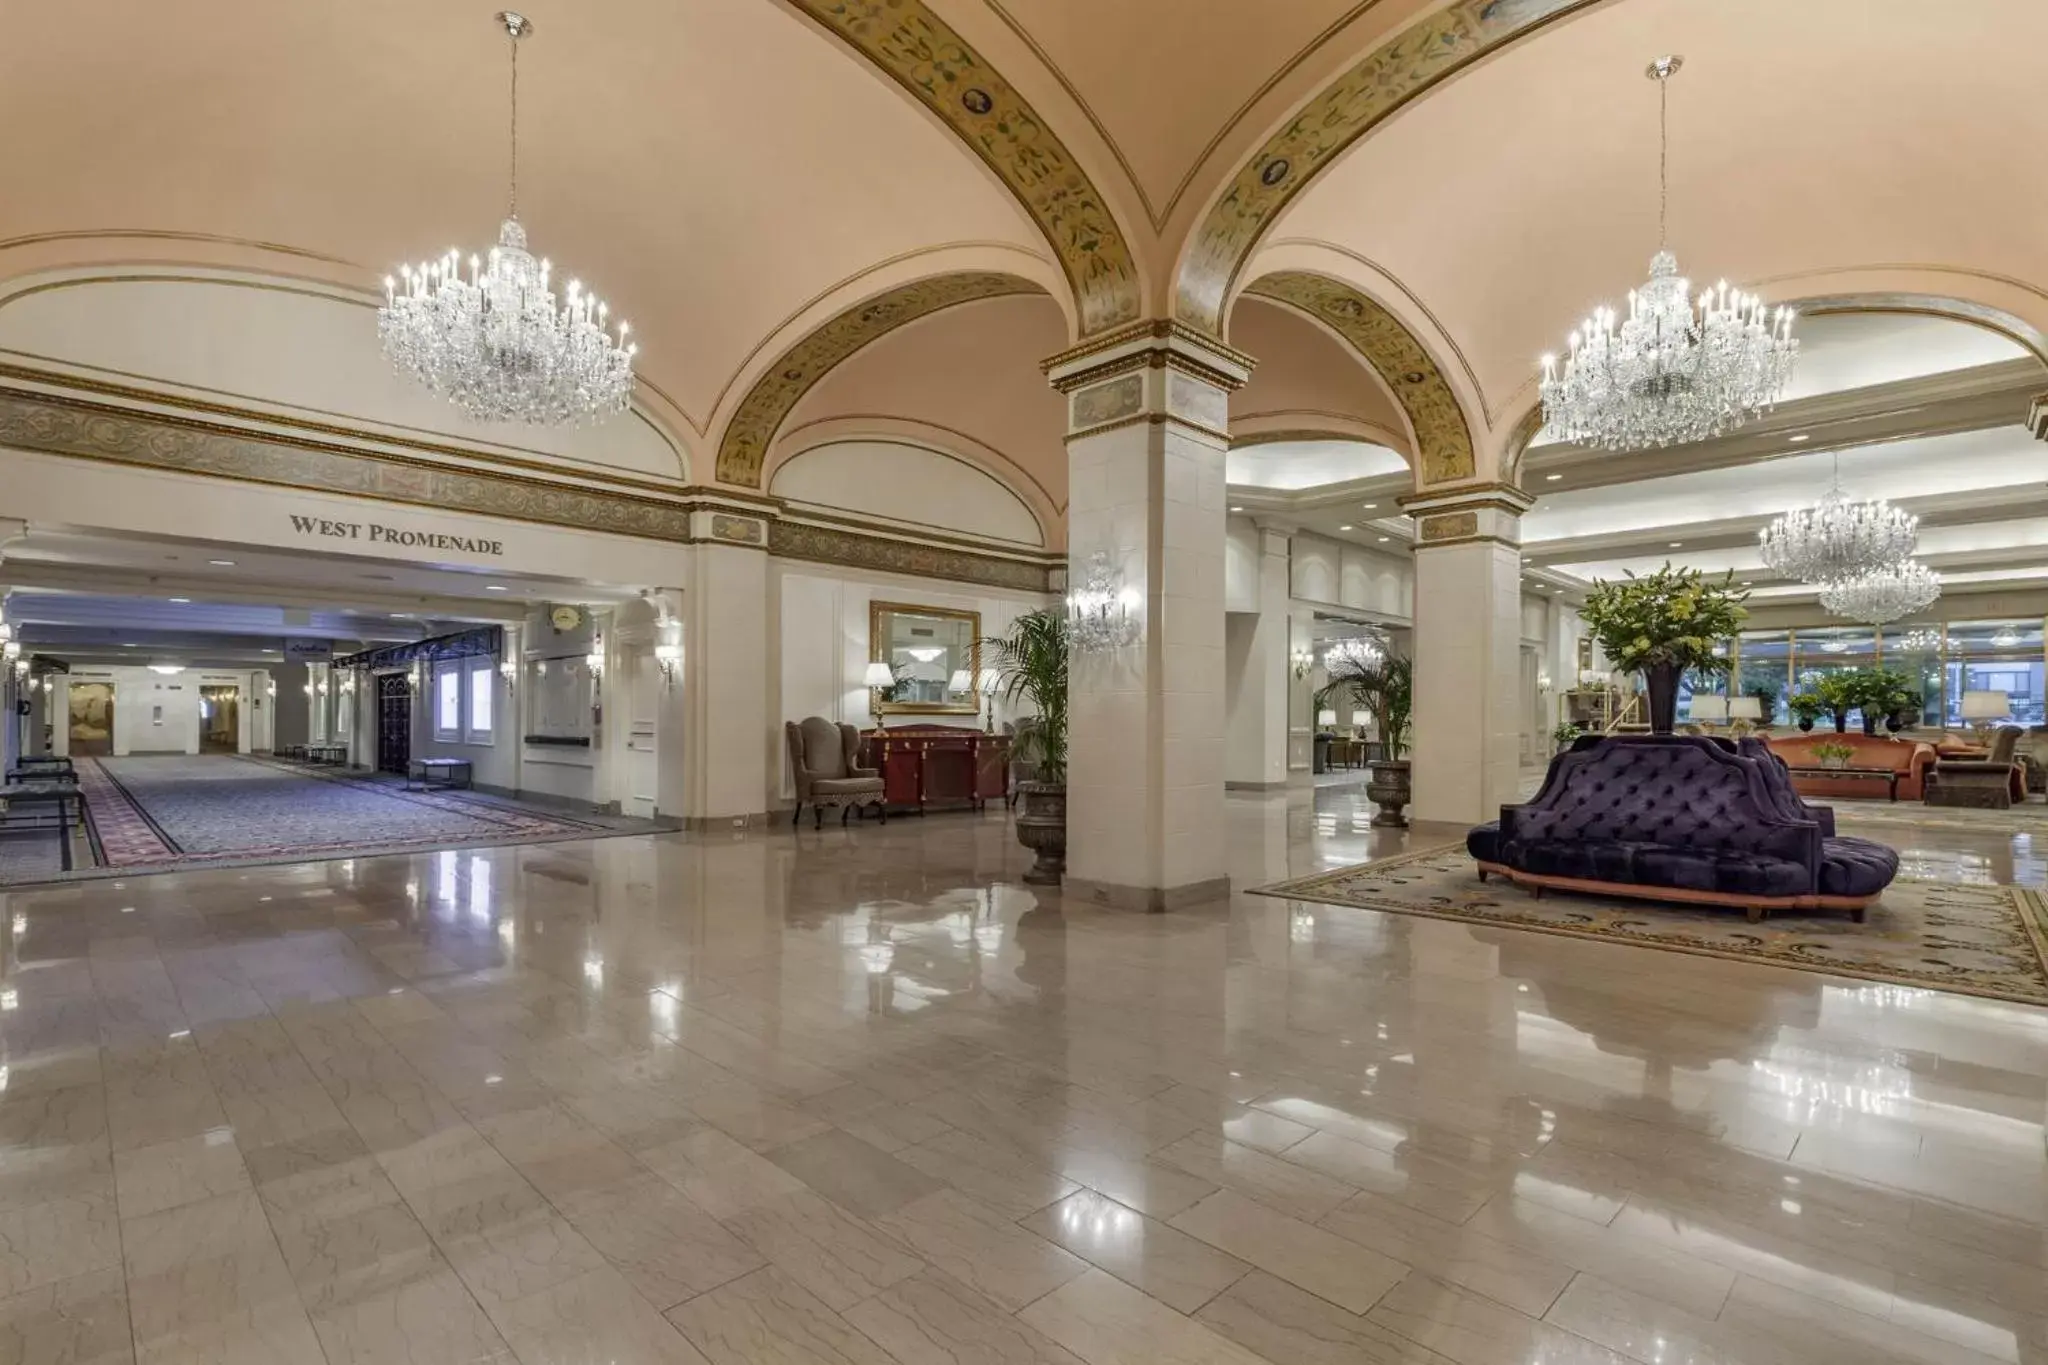 Lobby or reception, Lobby/Reception in Omni Shoreham Hotel